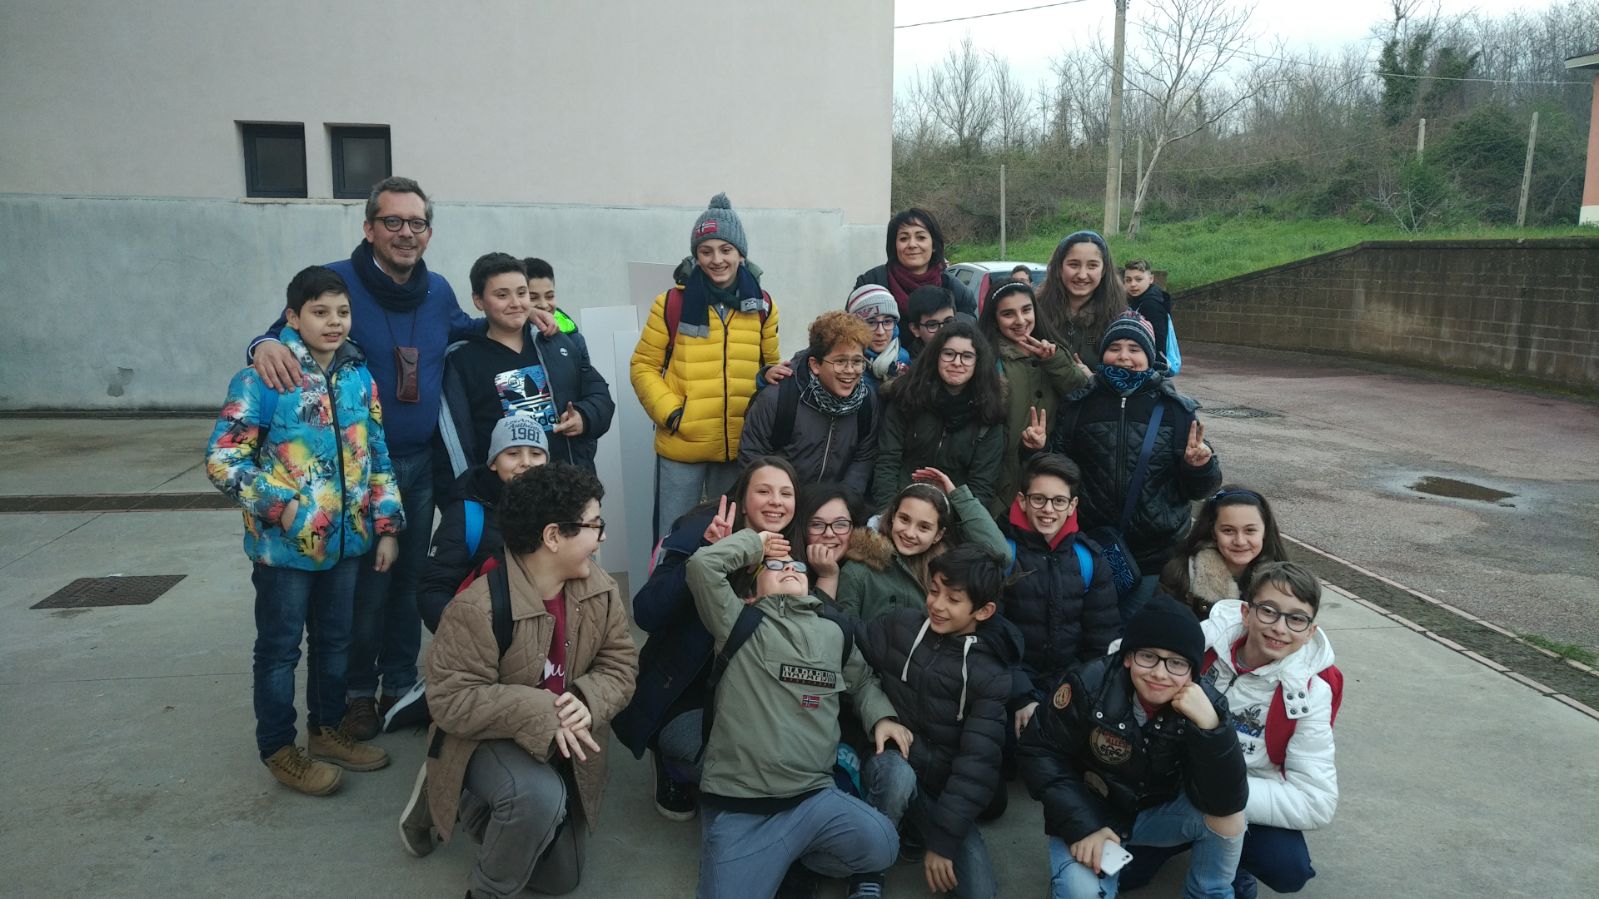 Benevento| Geobiolab, 400 i visitatori per progetto “Paco Lanciano”